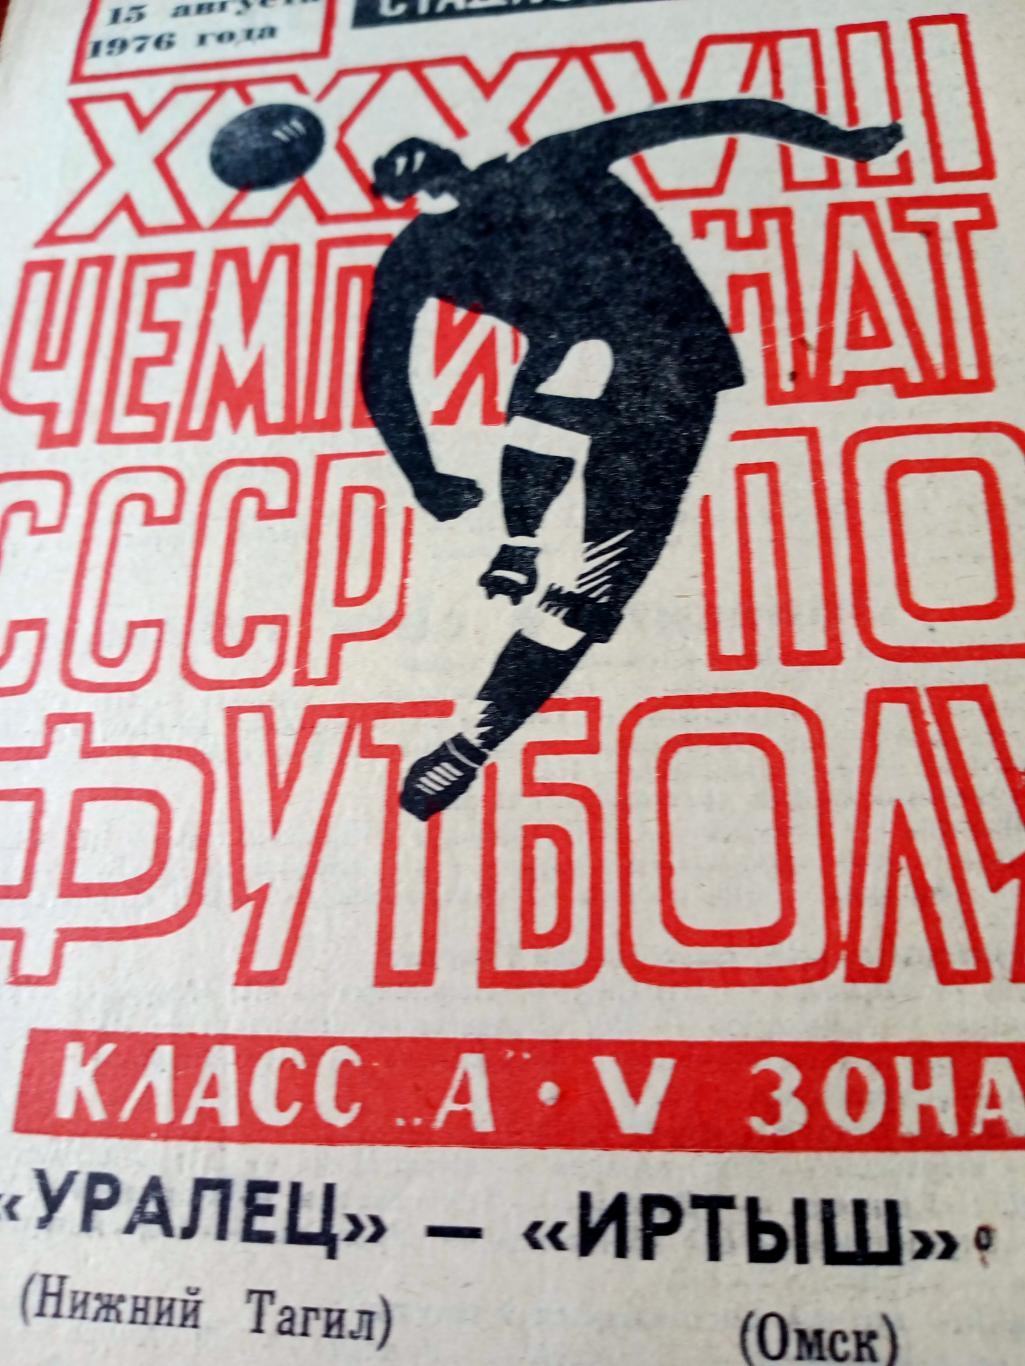 Уралец Нижний Тагил - Иртыш Омск. 15 августа 1976 год